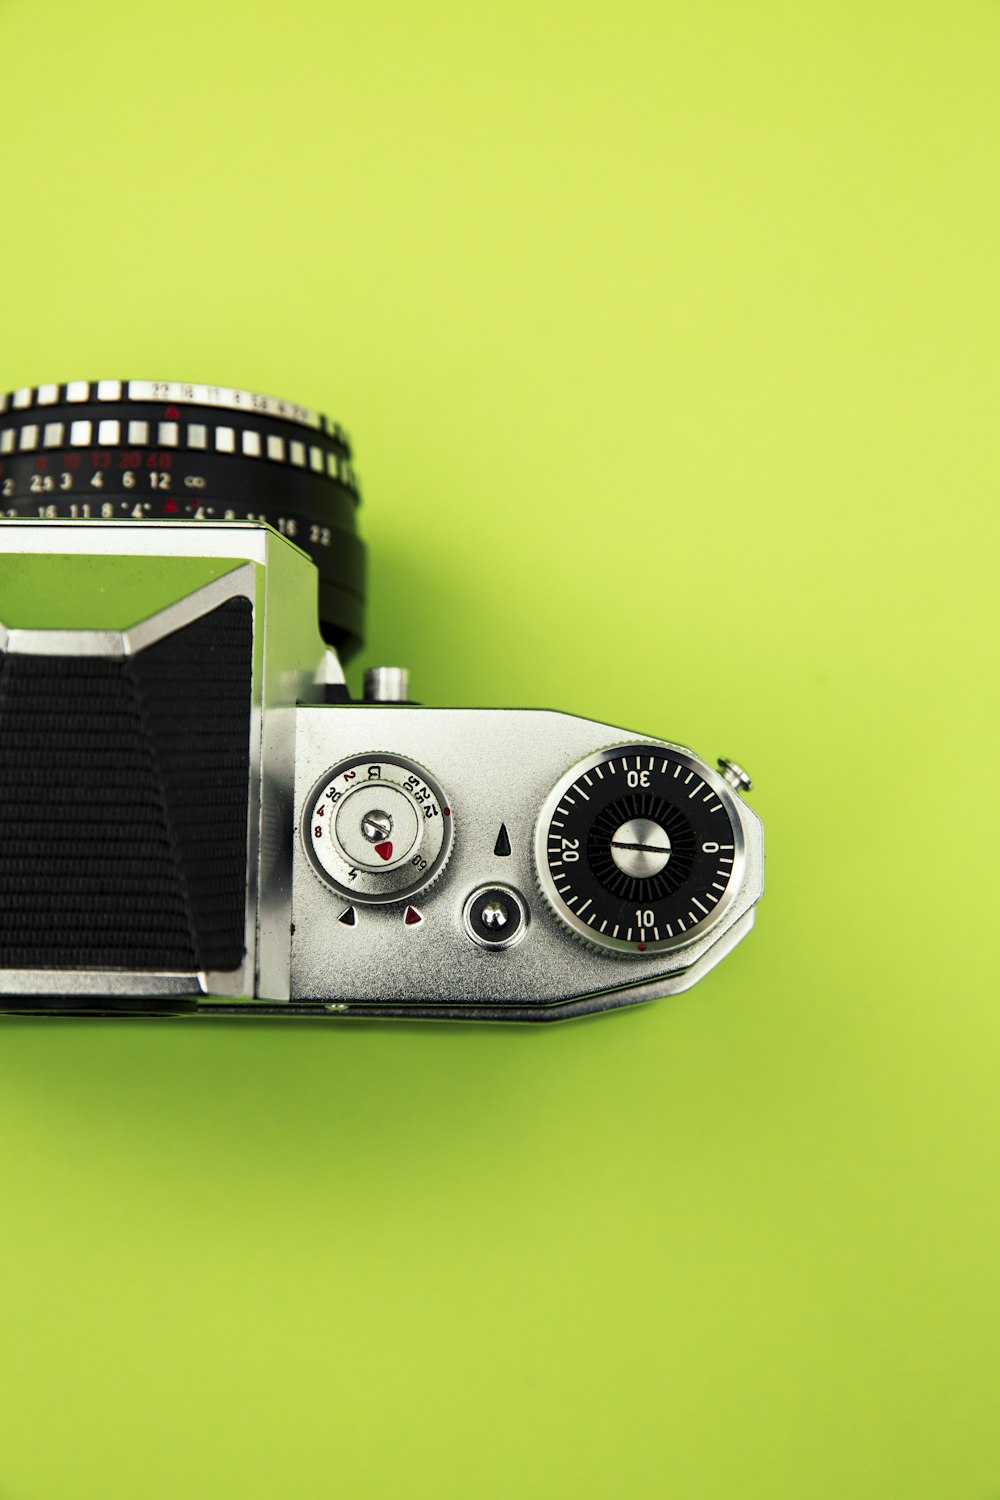 Fotocamera nera e argento su superficie verde